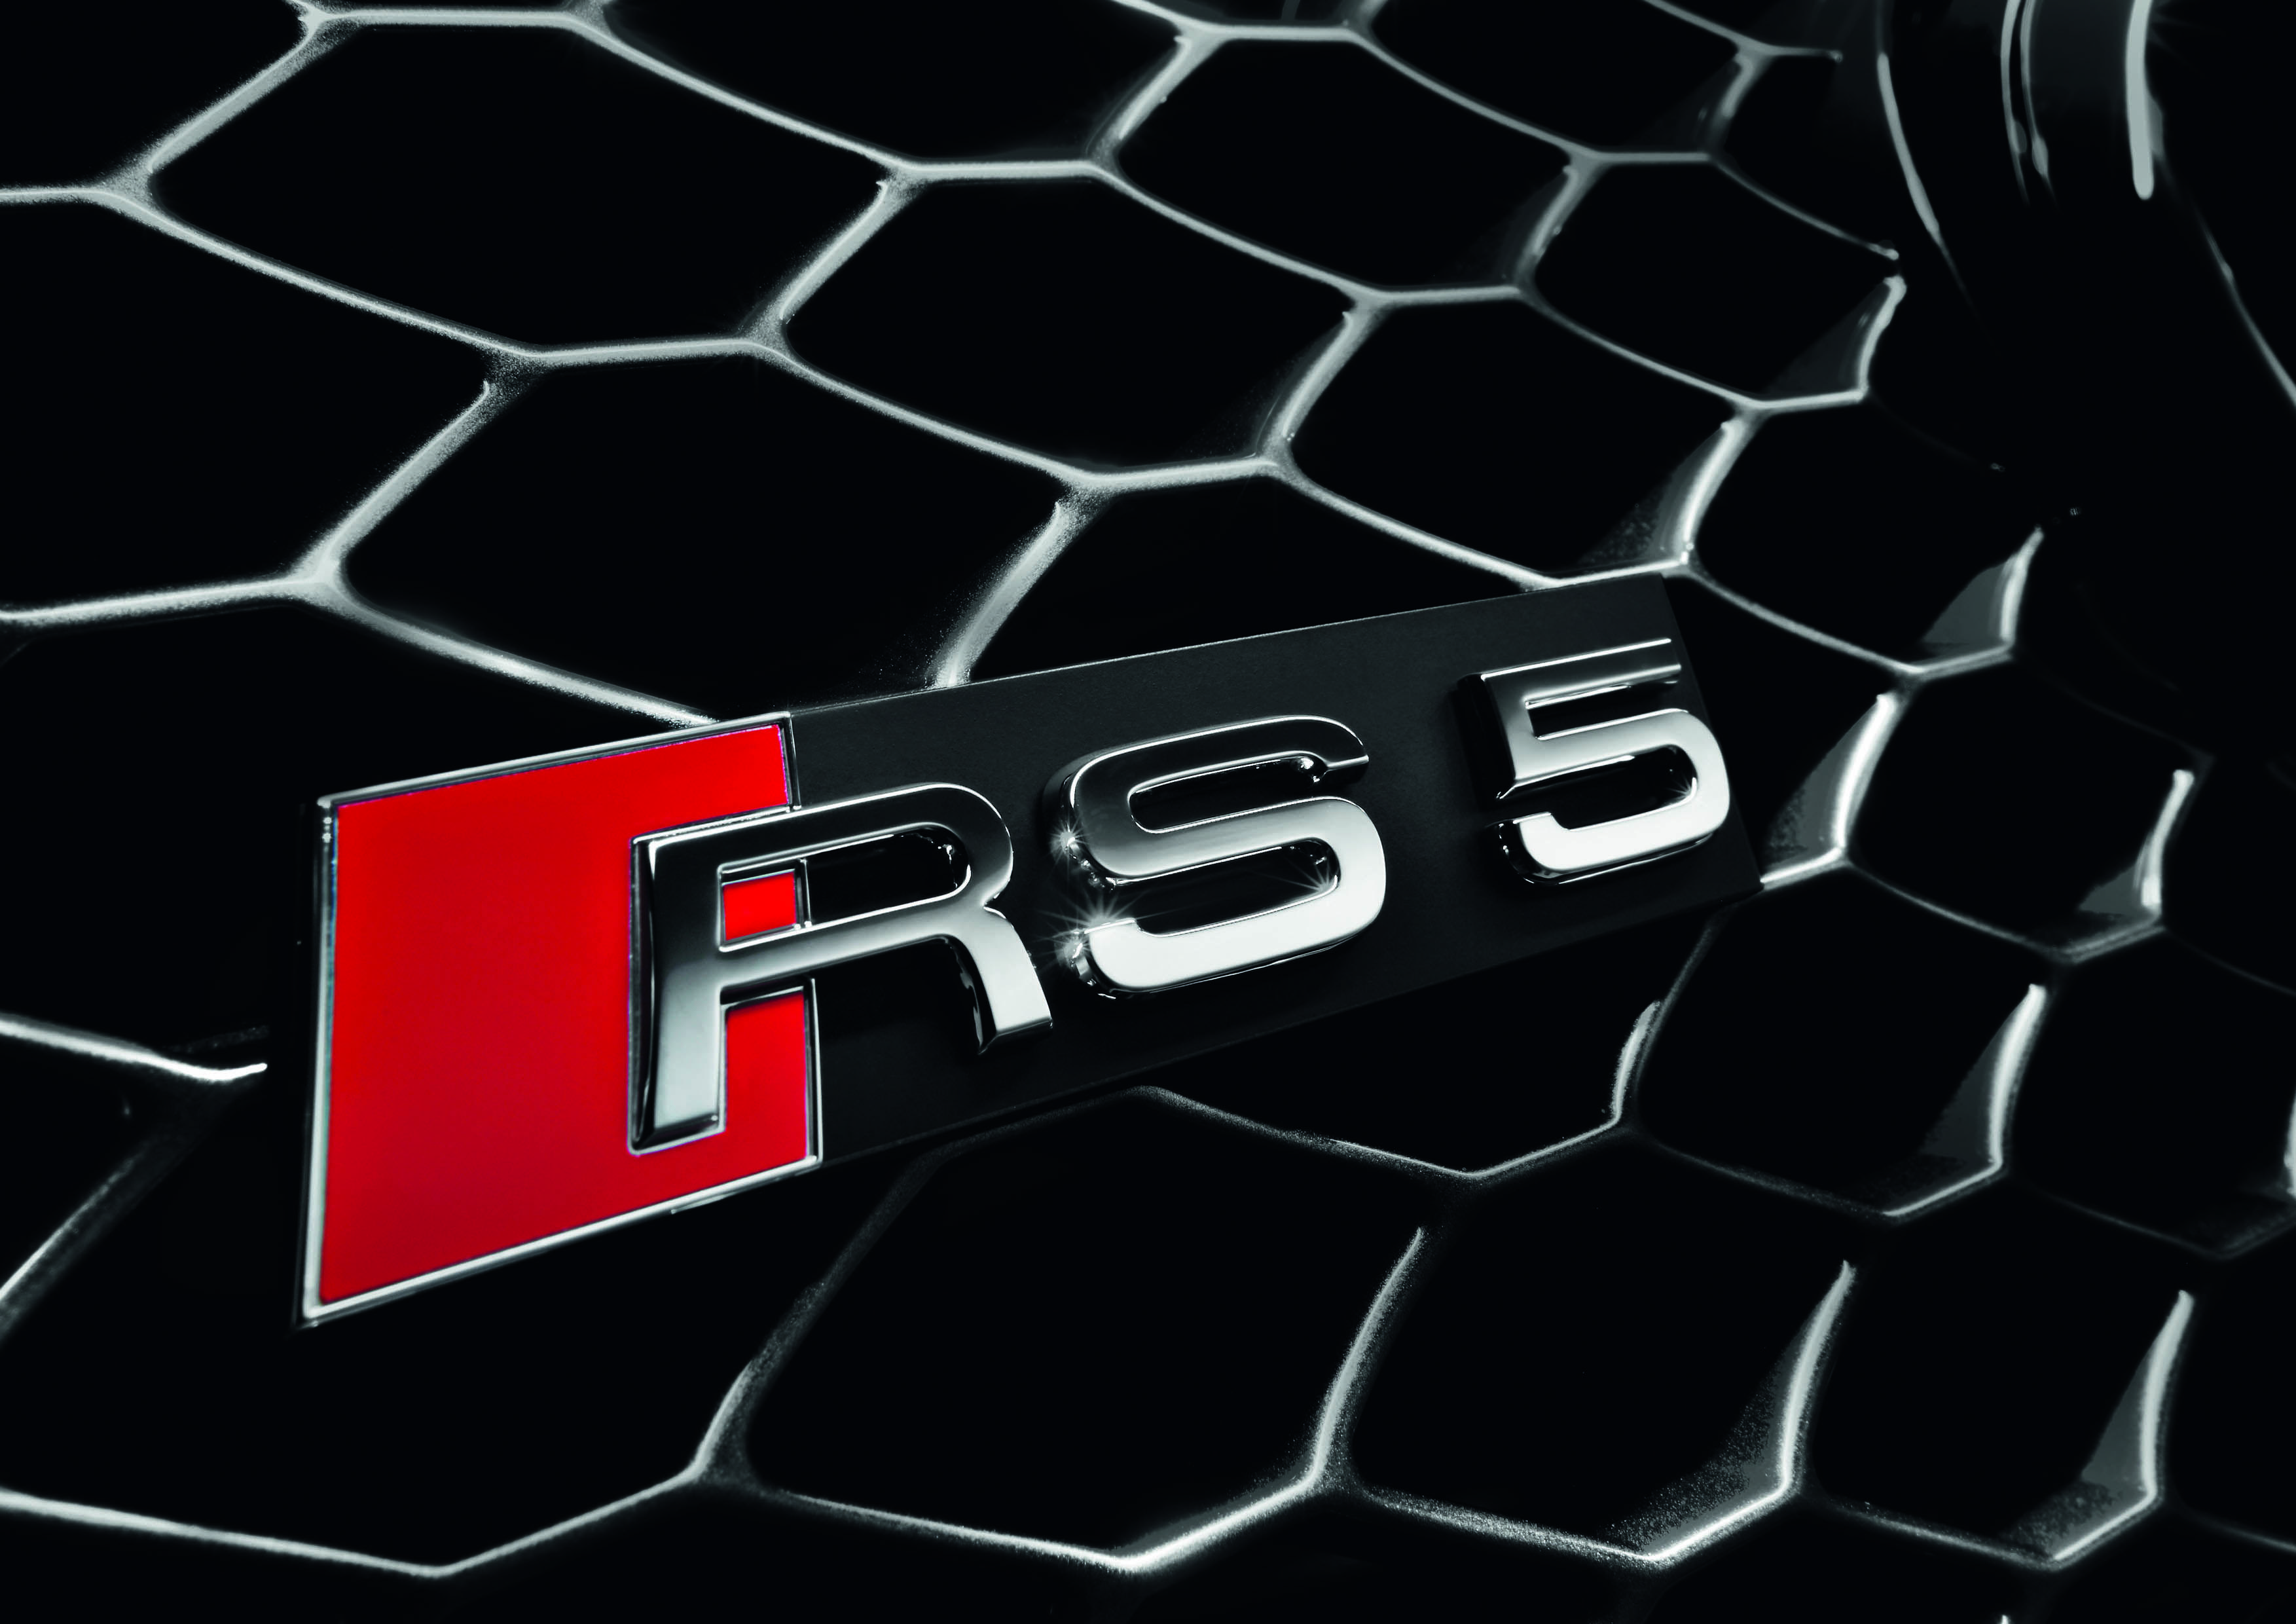 Audi RS5 Logo - 2010 Audi RS5 450 HP V8 Front Badge - | EuroCar News